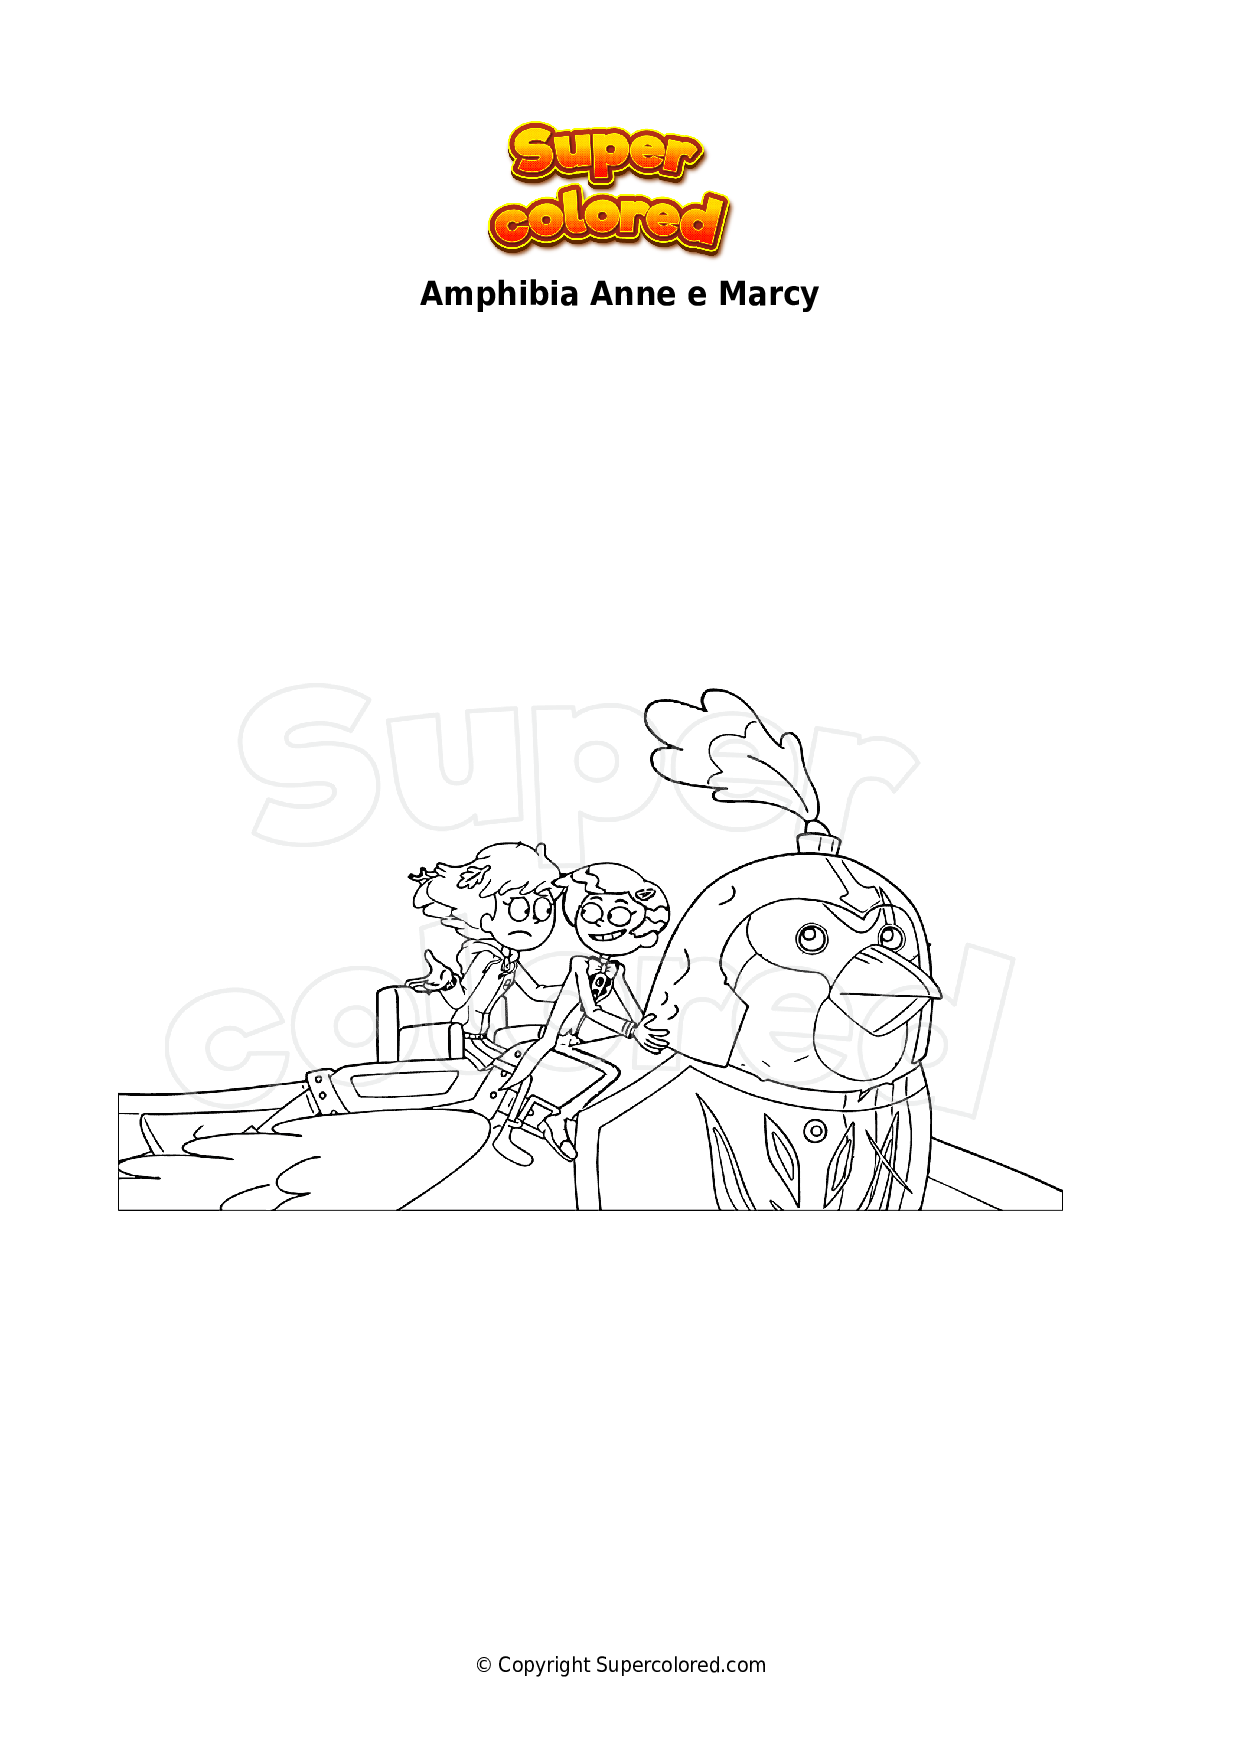 Dibujo para colorear Amphibia Anne e Marcy - Supercolored.com